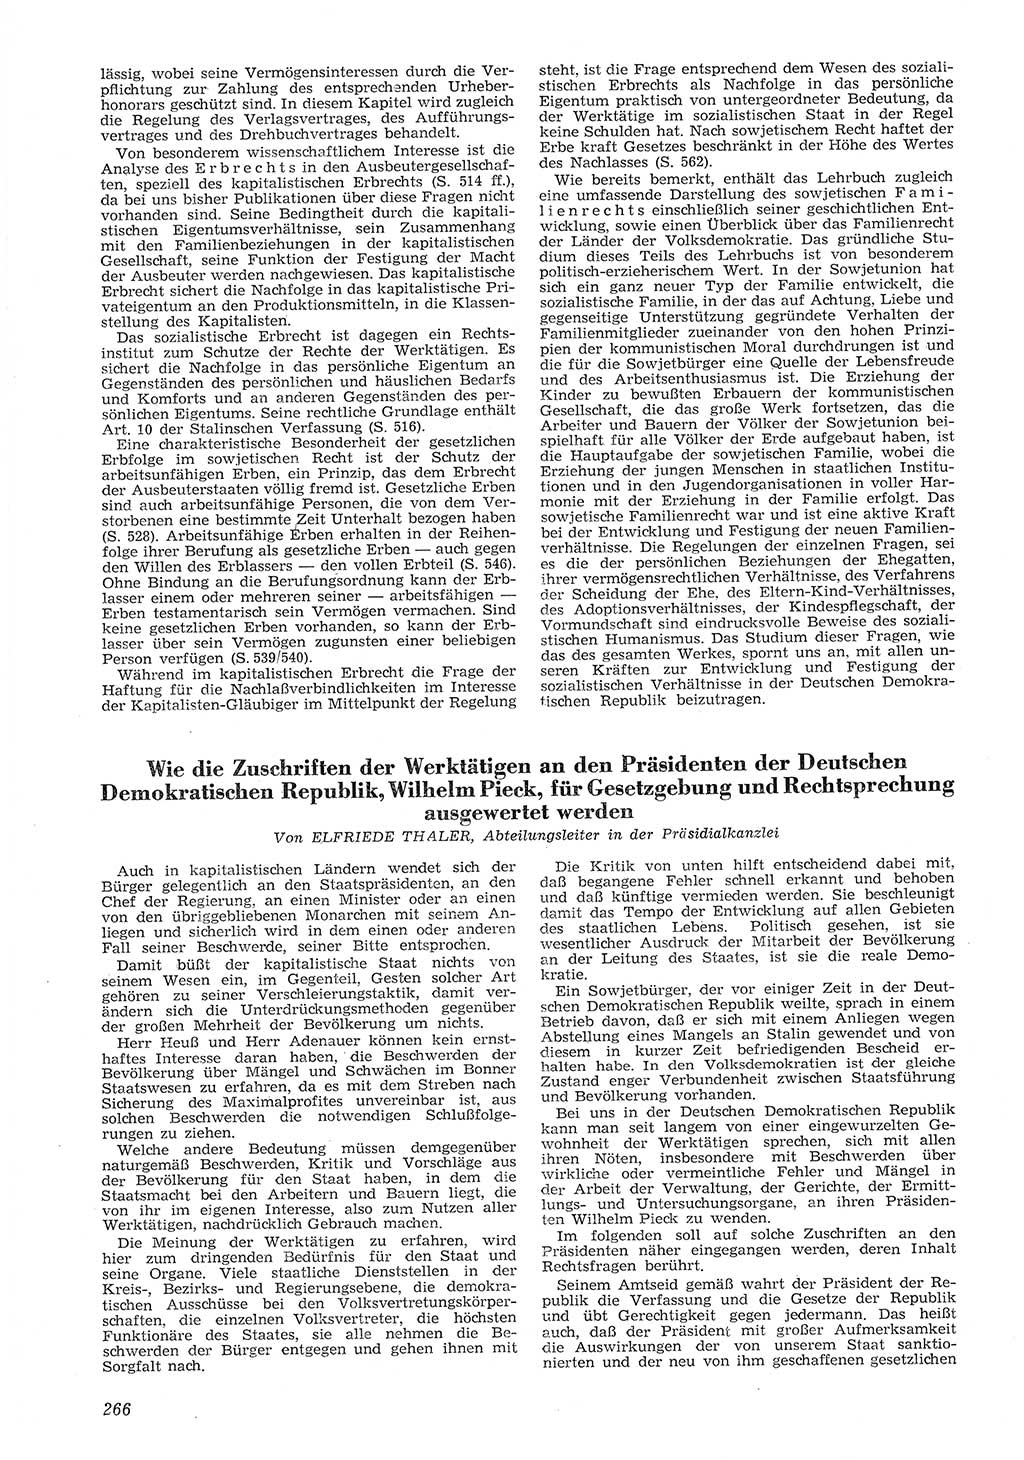 Neue Justiz (NJ), Zeitschrift für Recht und Rechtswissenschaft [Deutsche Demokratische Republik (DDR)], 8. Jahrgang 1954, Seite 266 (NJ DDR 1954, S. 266)